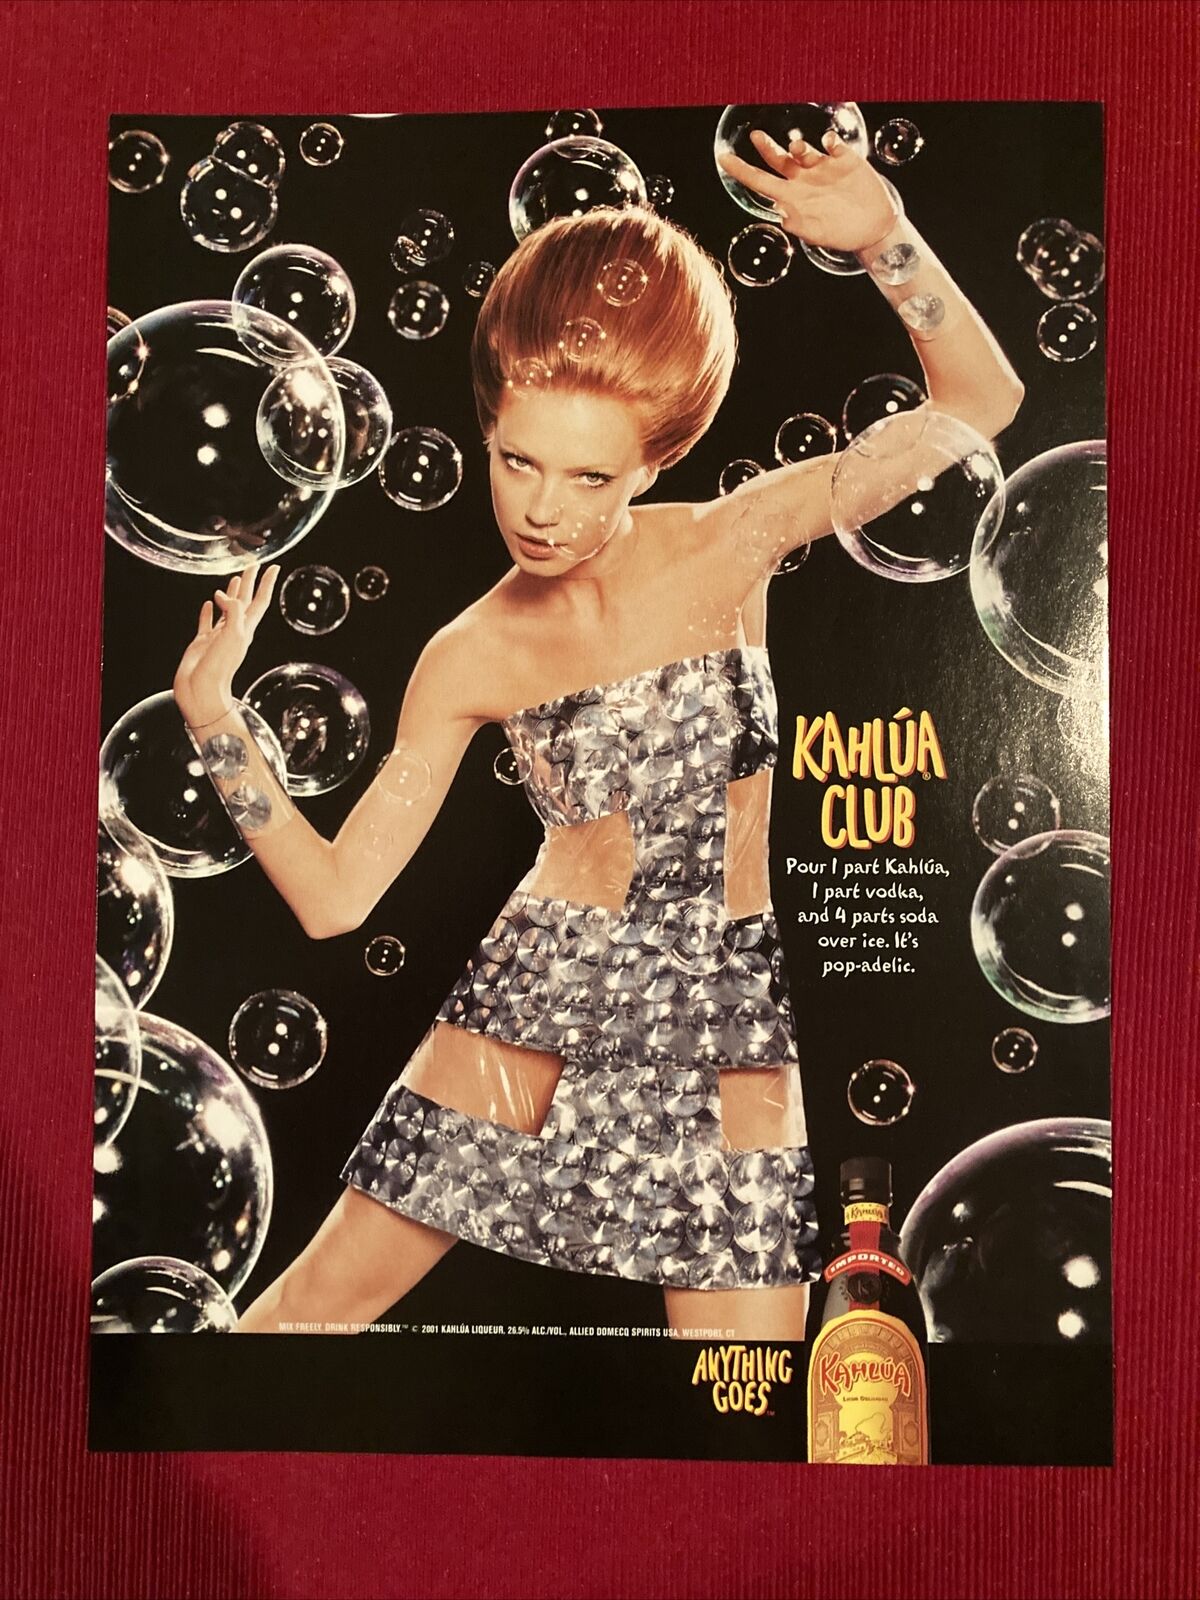 Пару постеров старой рекламы алкоголя. Ликер Kahlua . История,Алкоголь,Ликеры,Реклама